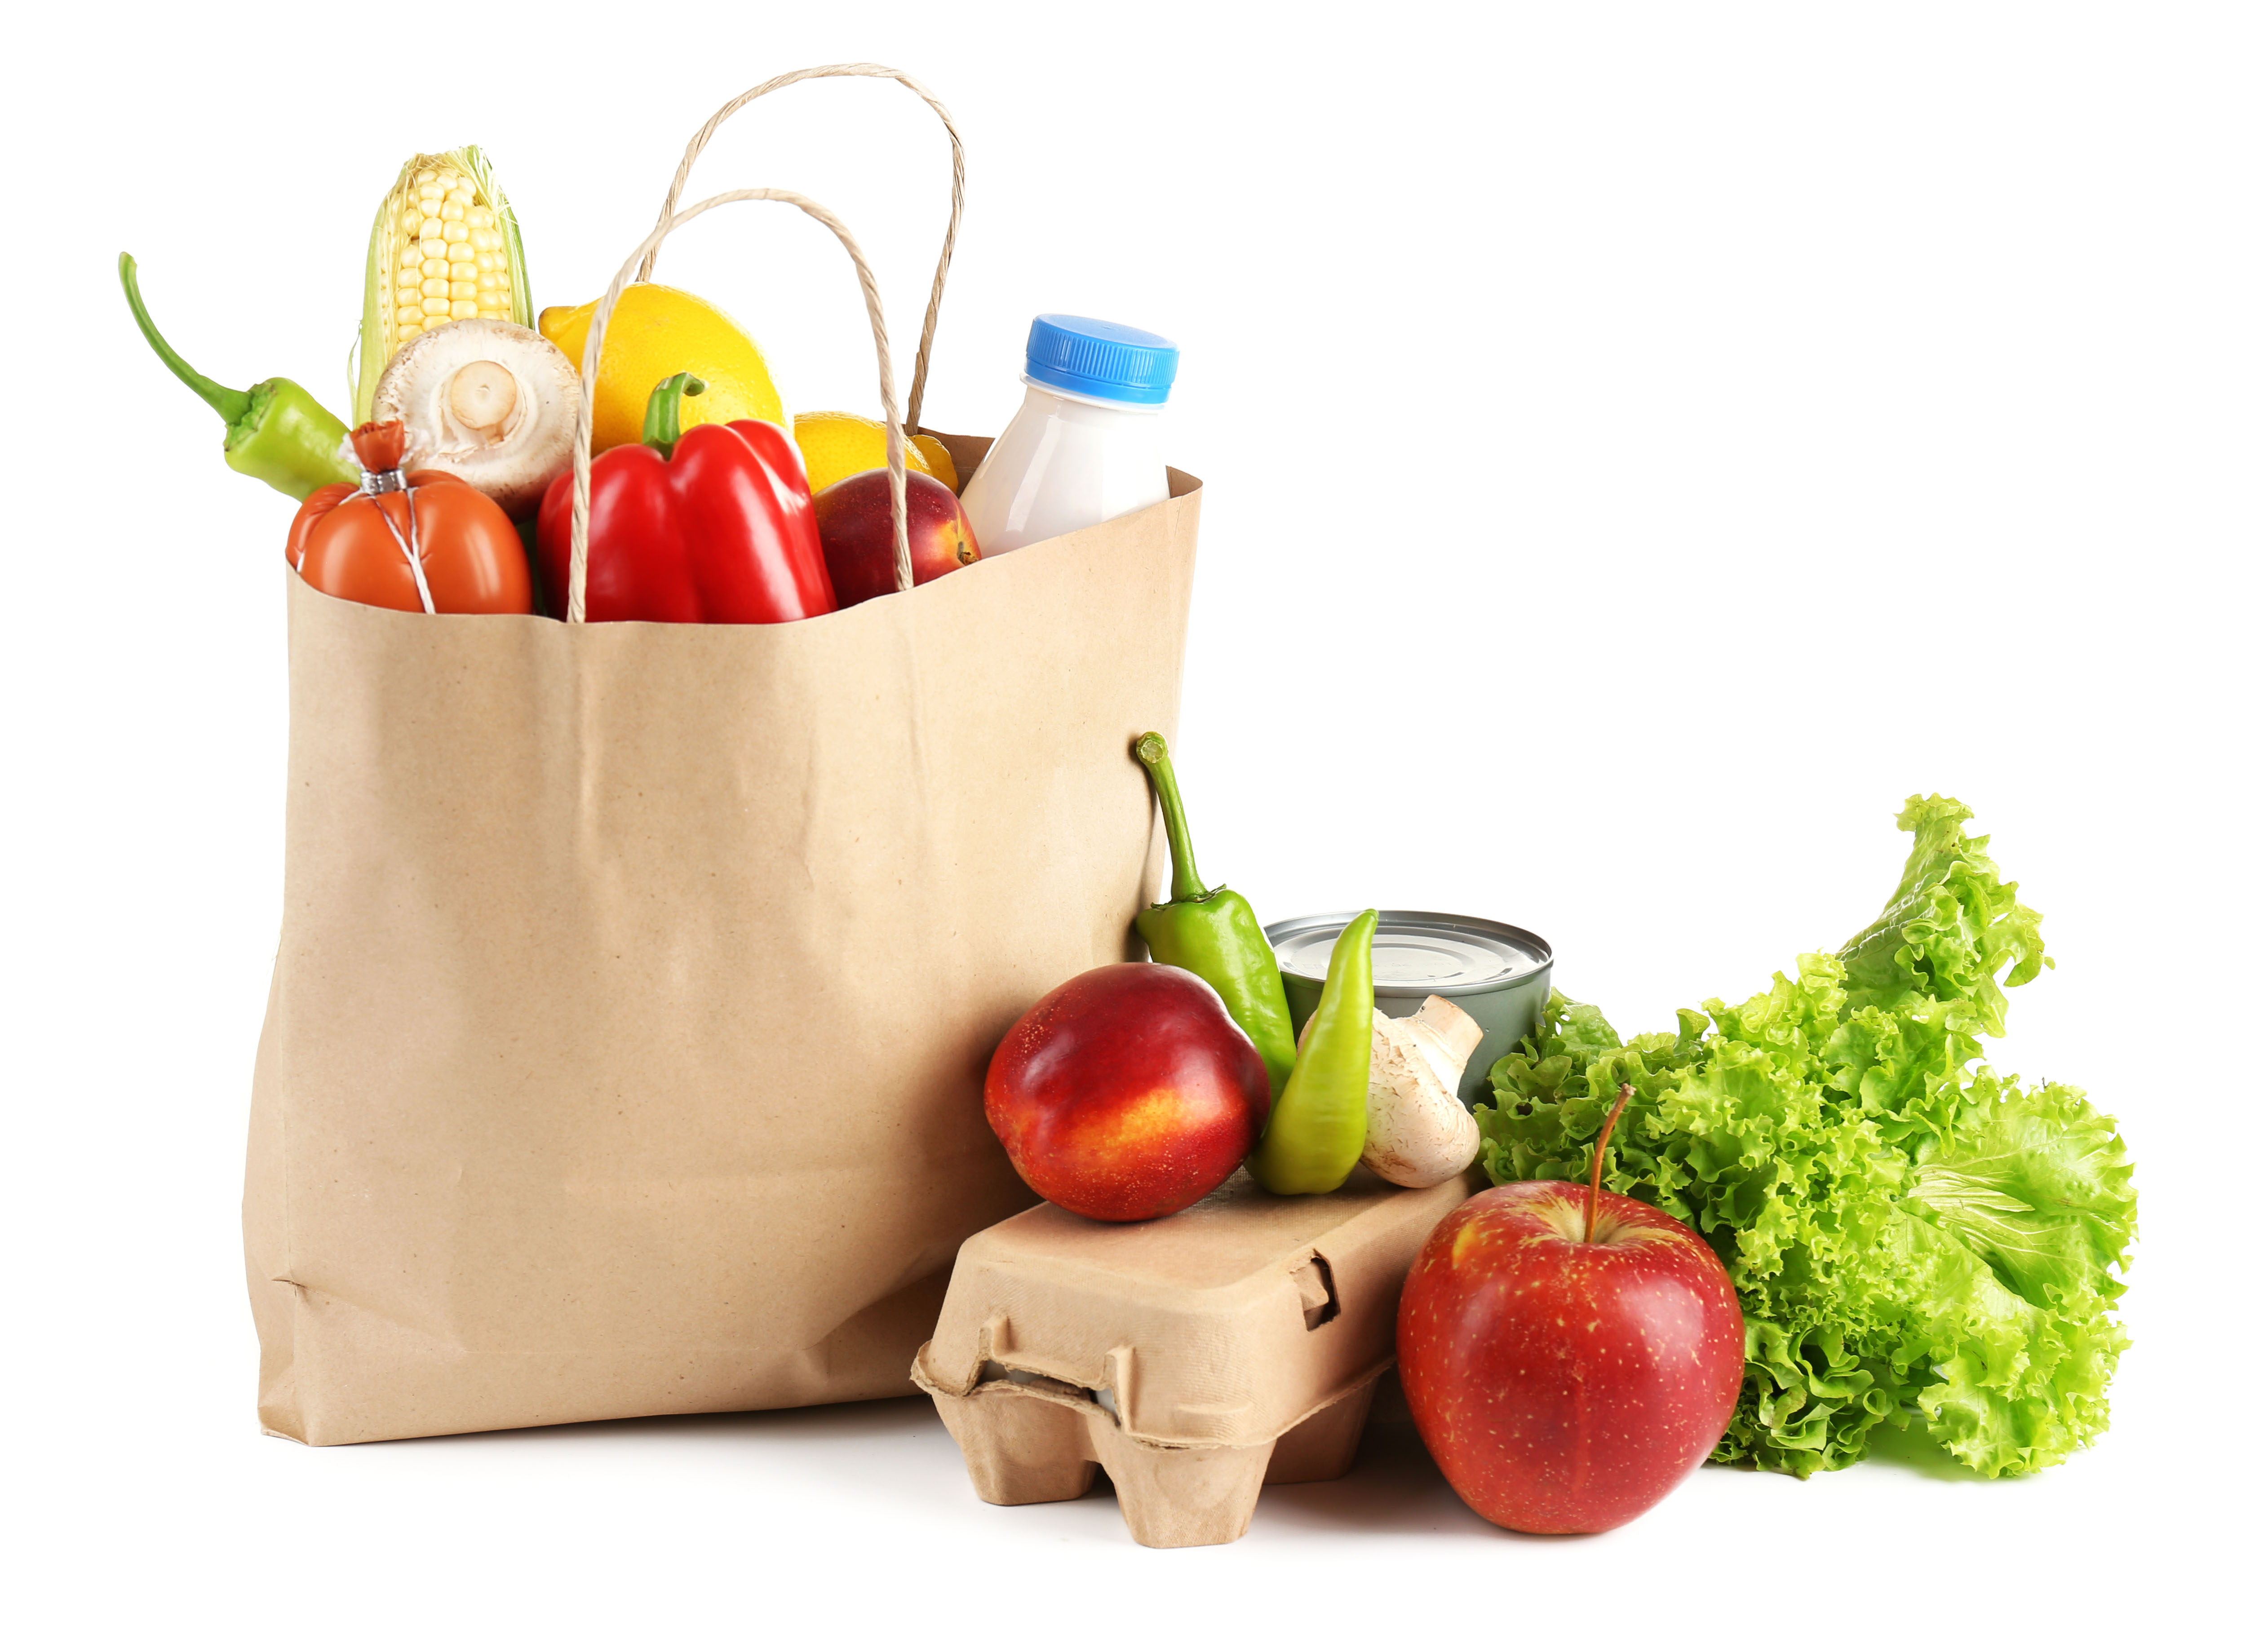 Papiertüte mit Gemüse und Milchflasche, davor liegen eine Eierschachtel, Salat, Äpfel und eine Konservendose m